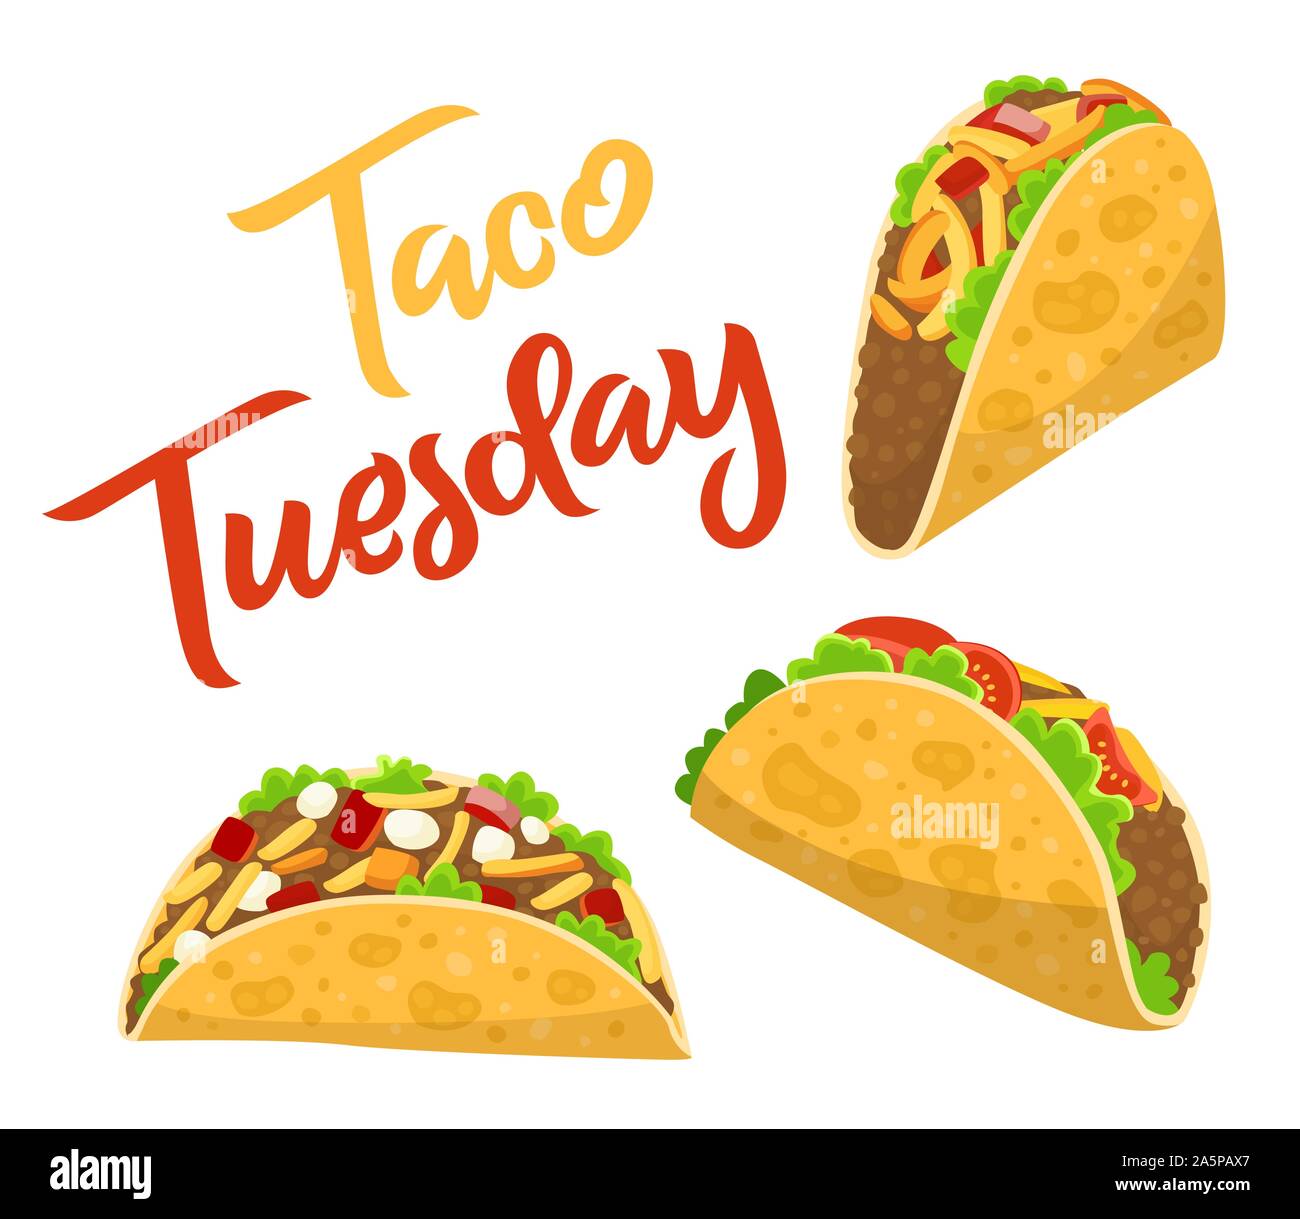 O que significa Taco Tuesday? - Pergunta sobre a Inglês (EUA